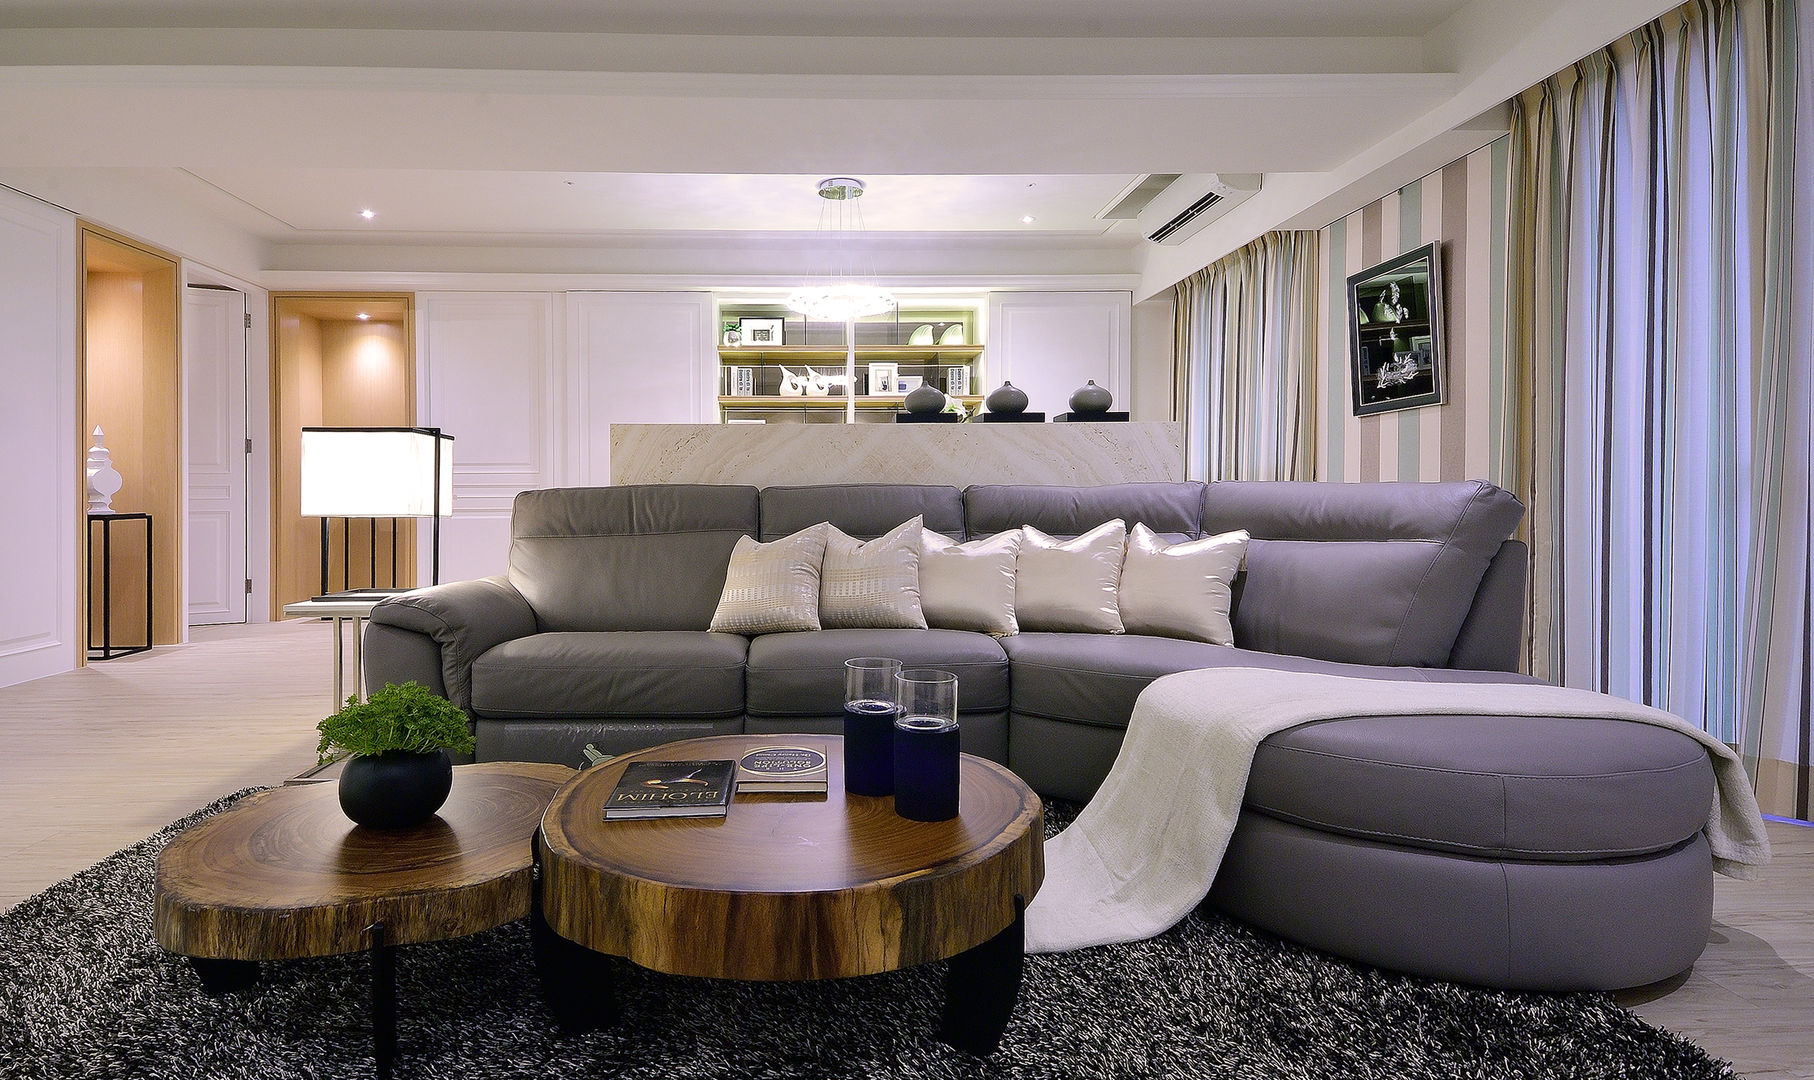 美式風格居家空間, 大觀創境空間設計事務所 大觀創境空間設計事務所 Eclectic style living room